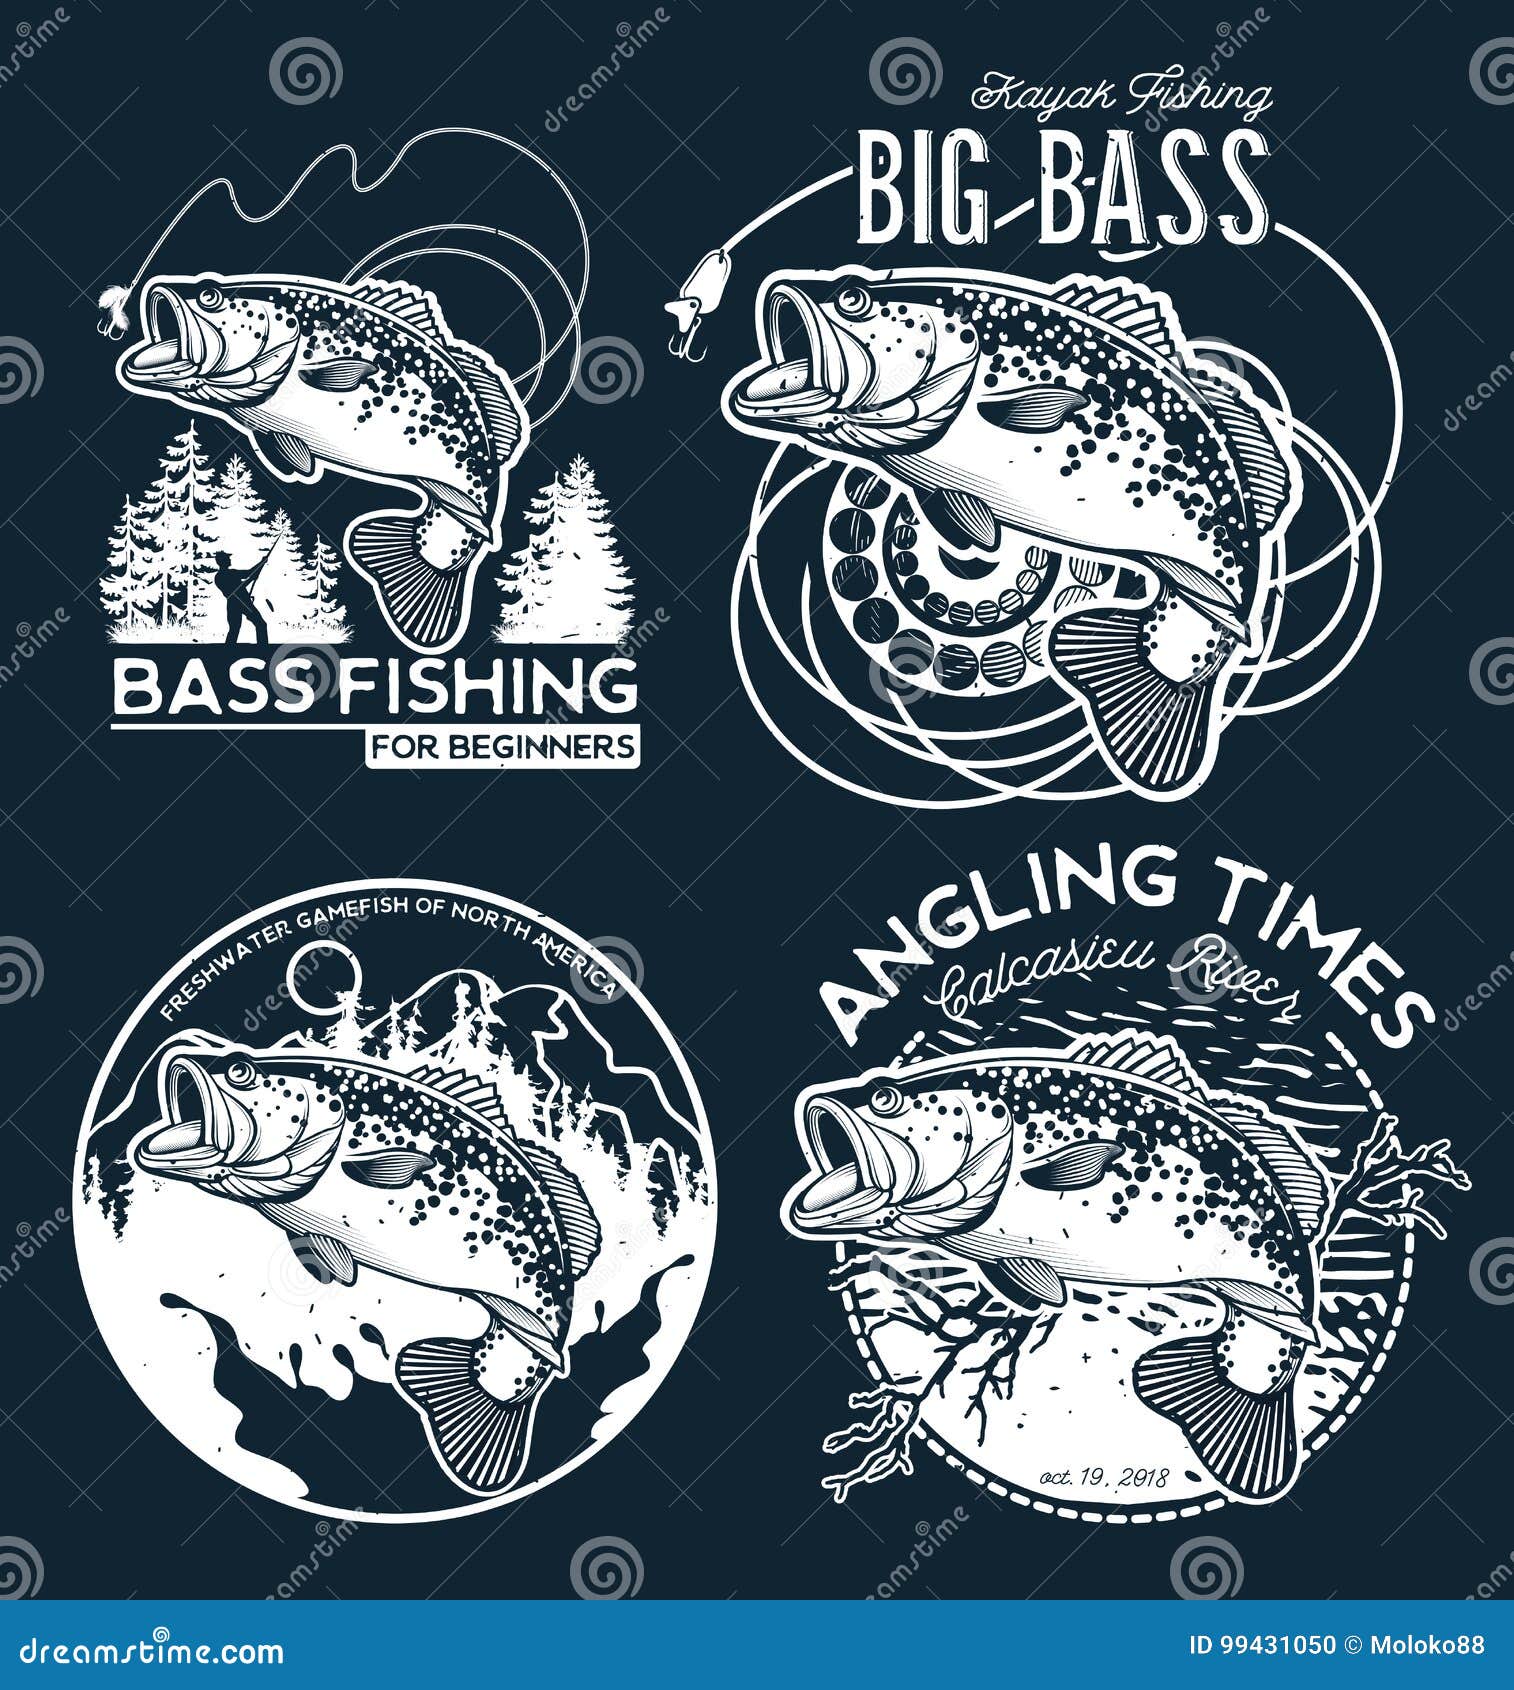 bass fishing emblem on black background.  .